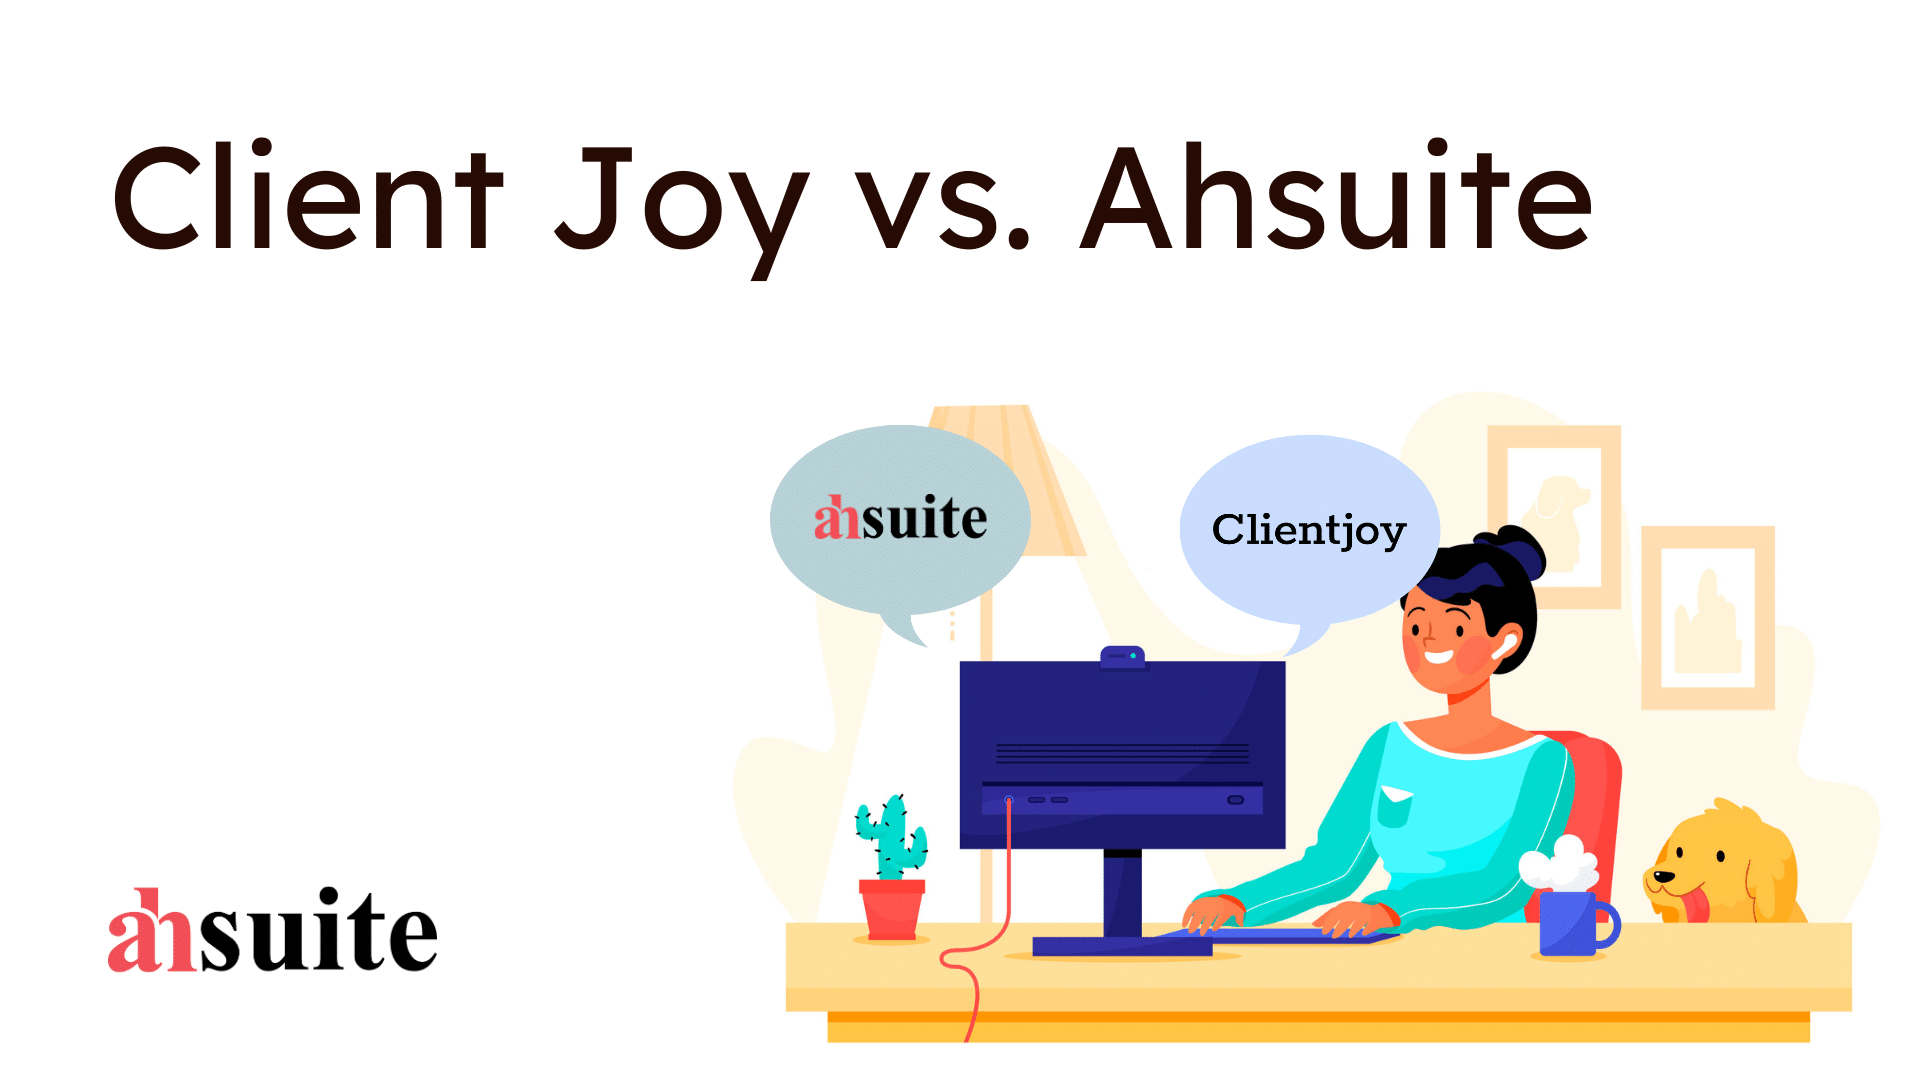 Client Joy vs. Ahsuite